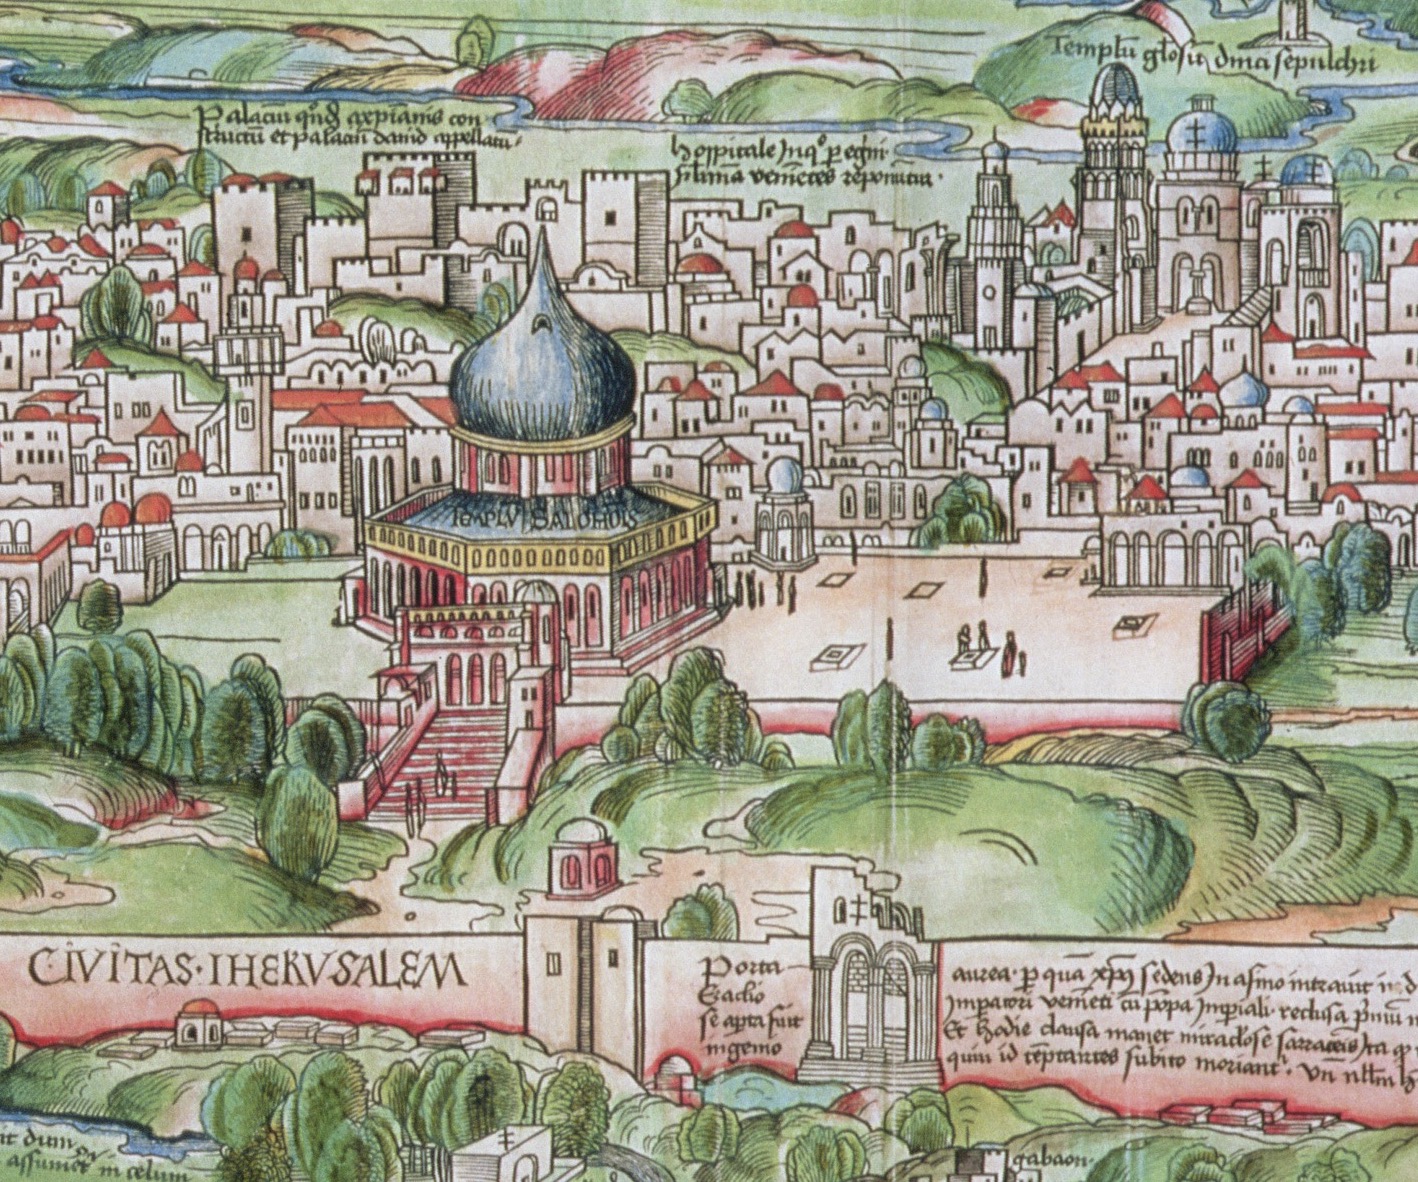 Cartografía sensorial de El viage de Hierusalem de Francisco Guerrero (Sevilla, 1592)